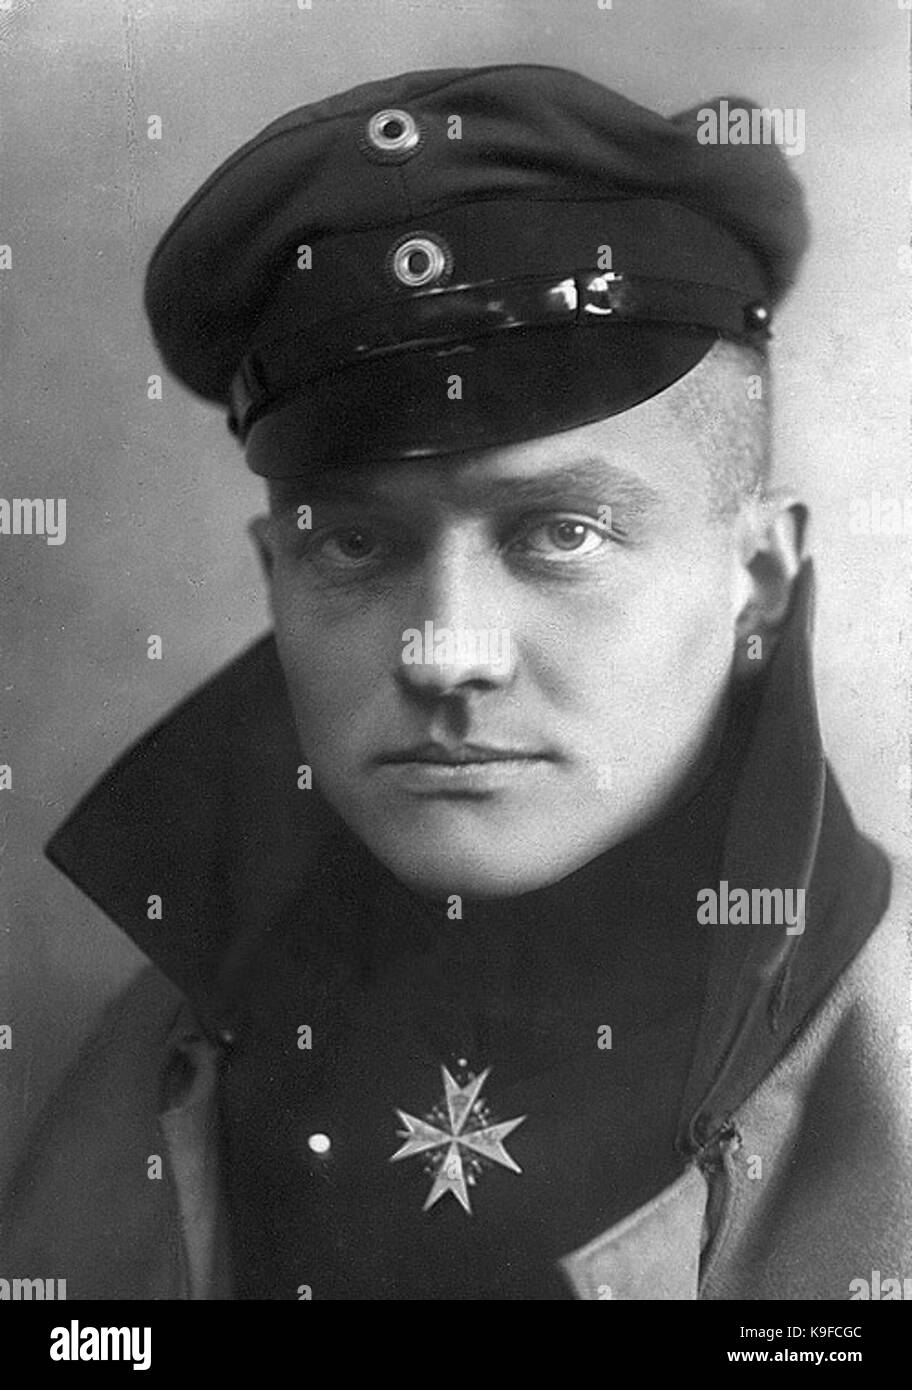 Manfred Albrecht Freiherr von Richthofen Stock Photo